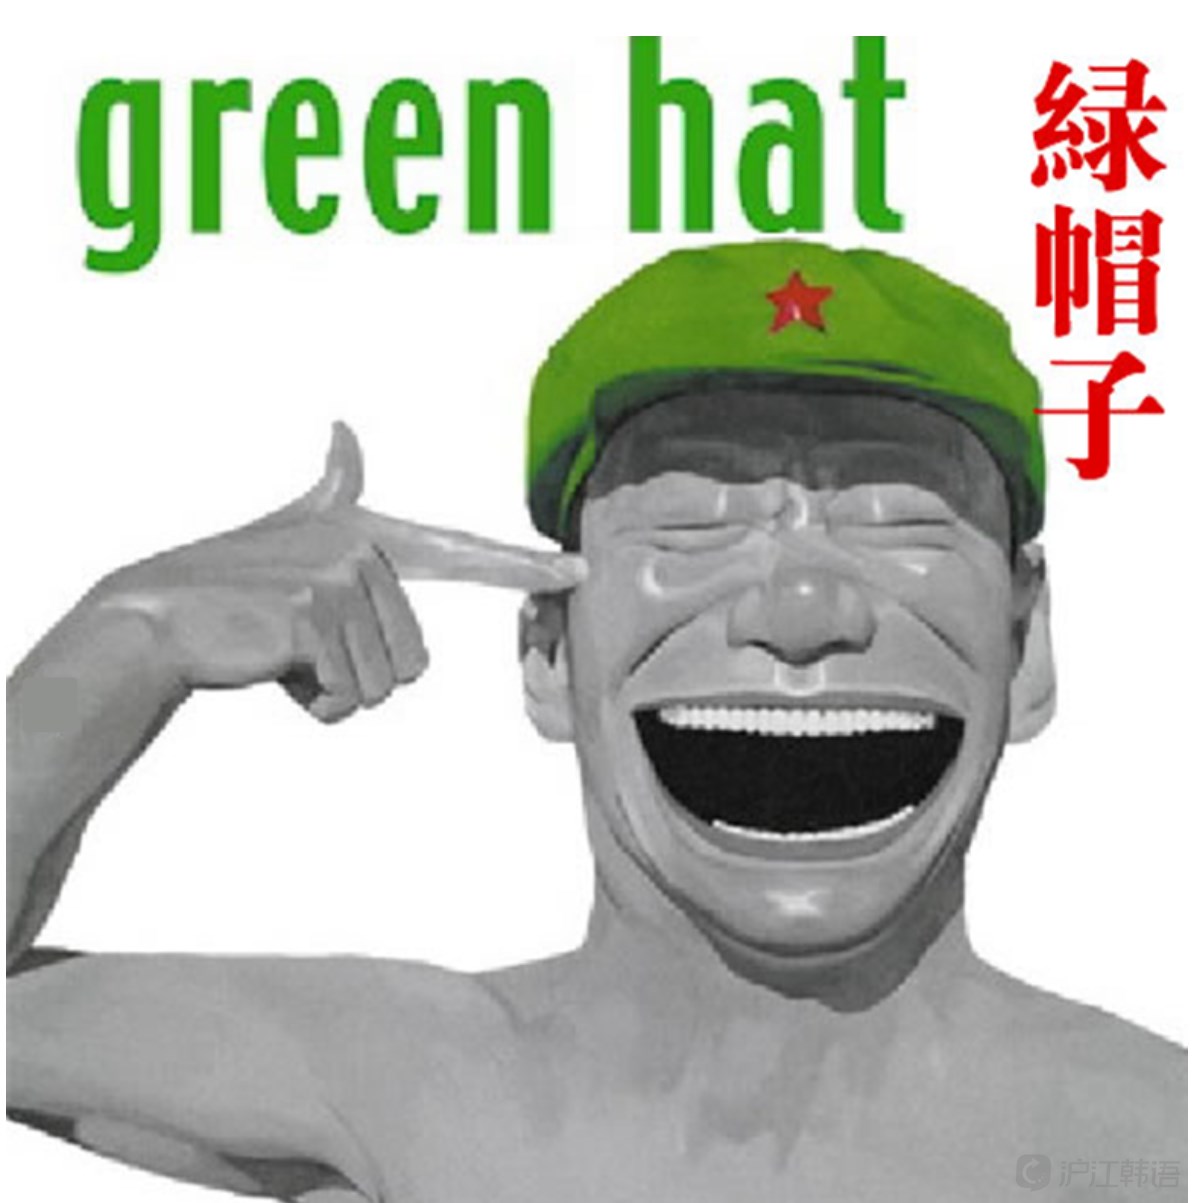 绿帽高清摄影大图-千库网